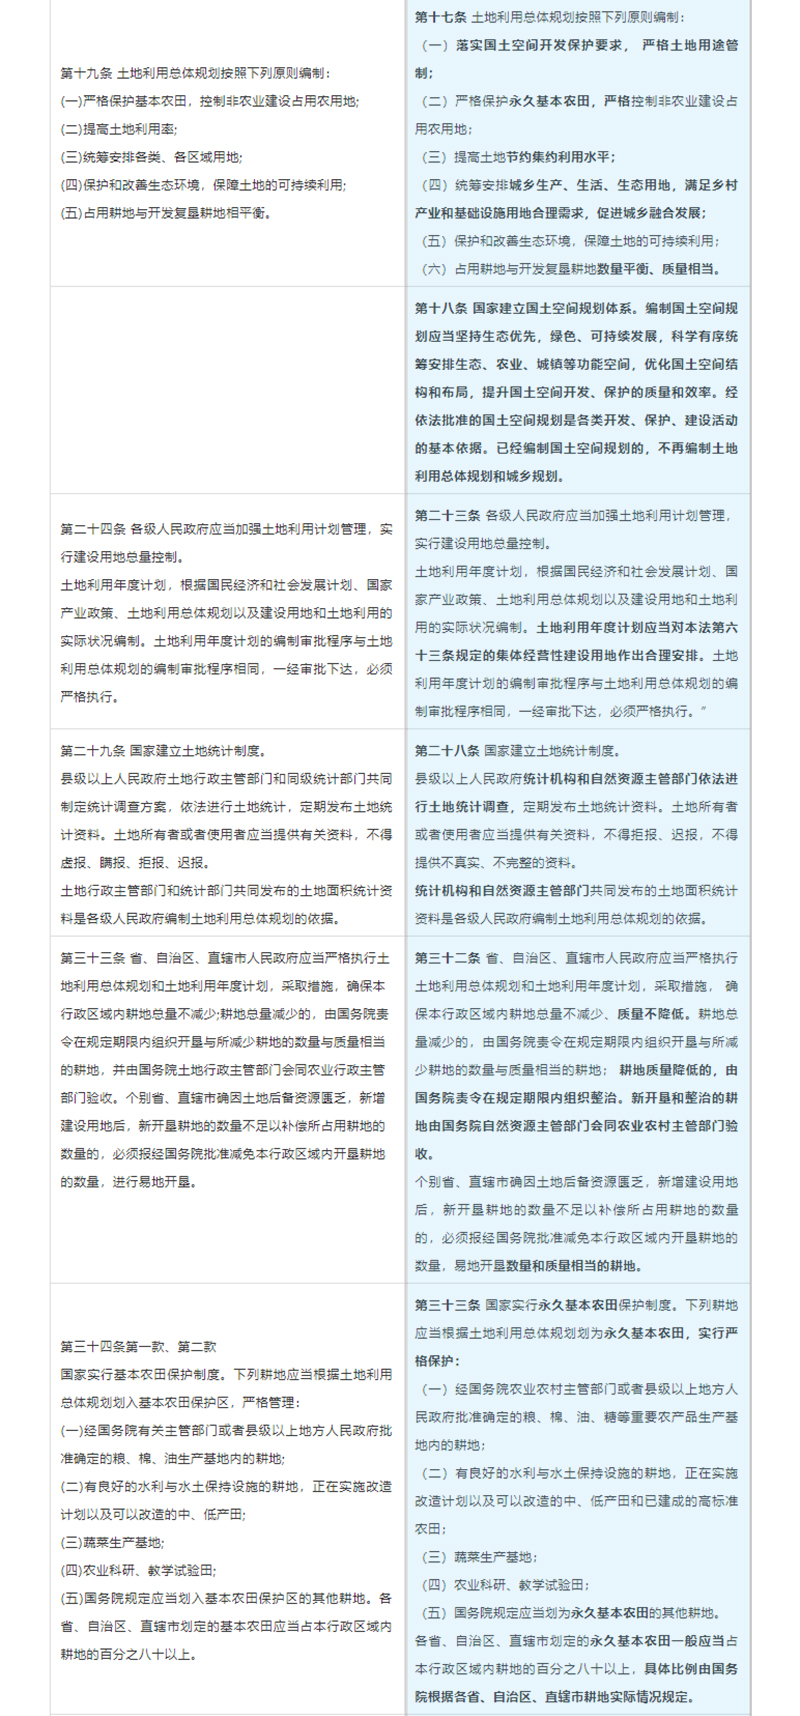 《中华人民共和国土地管理法》 相关条文修改前后对照表2.jpg